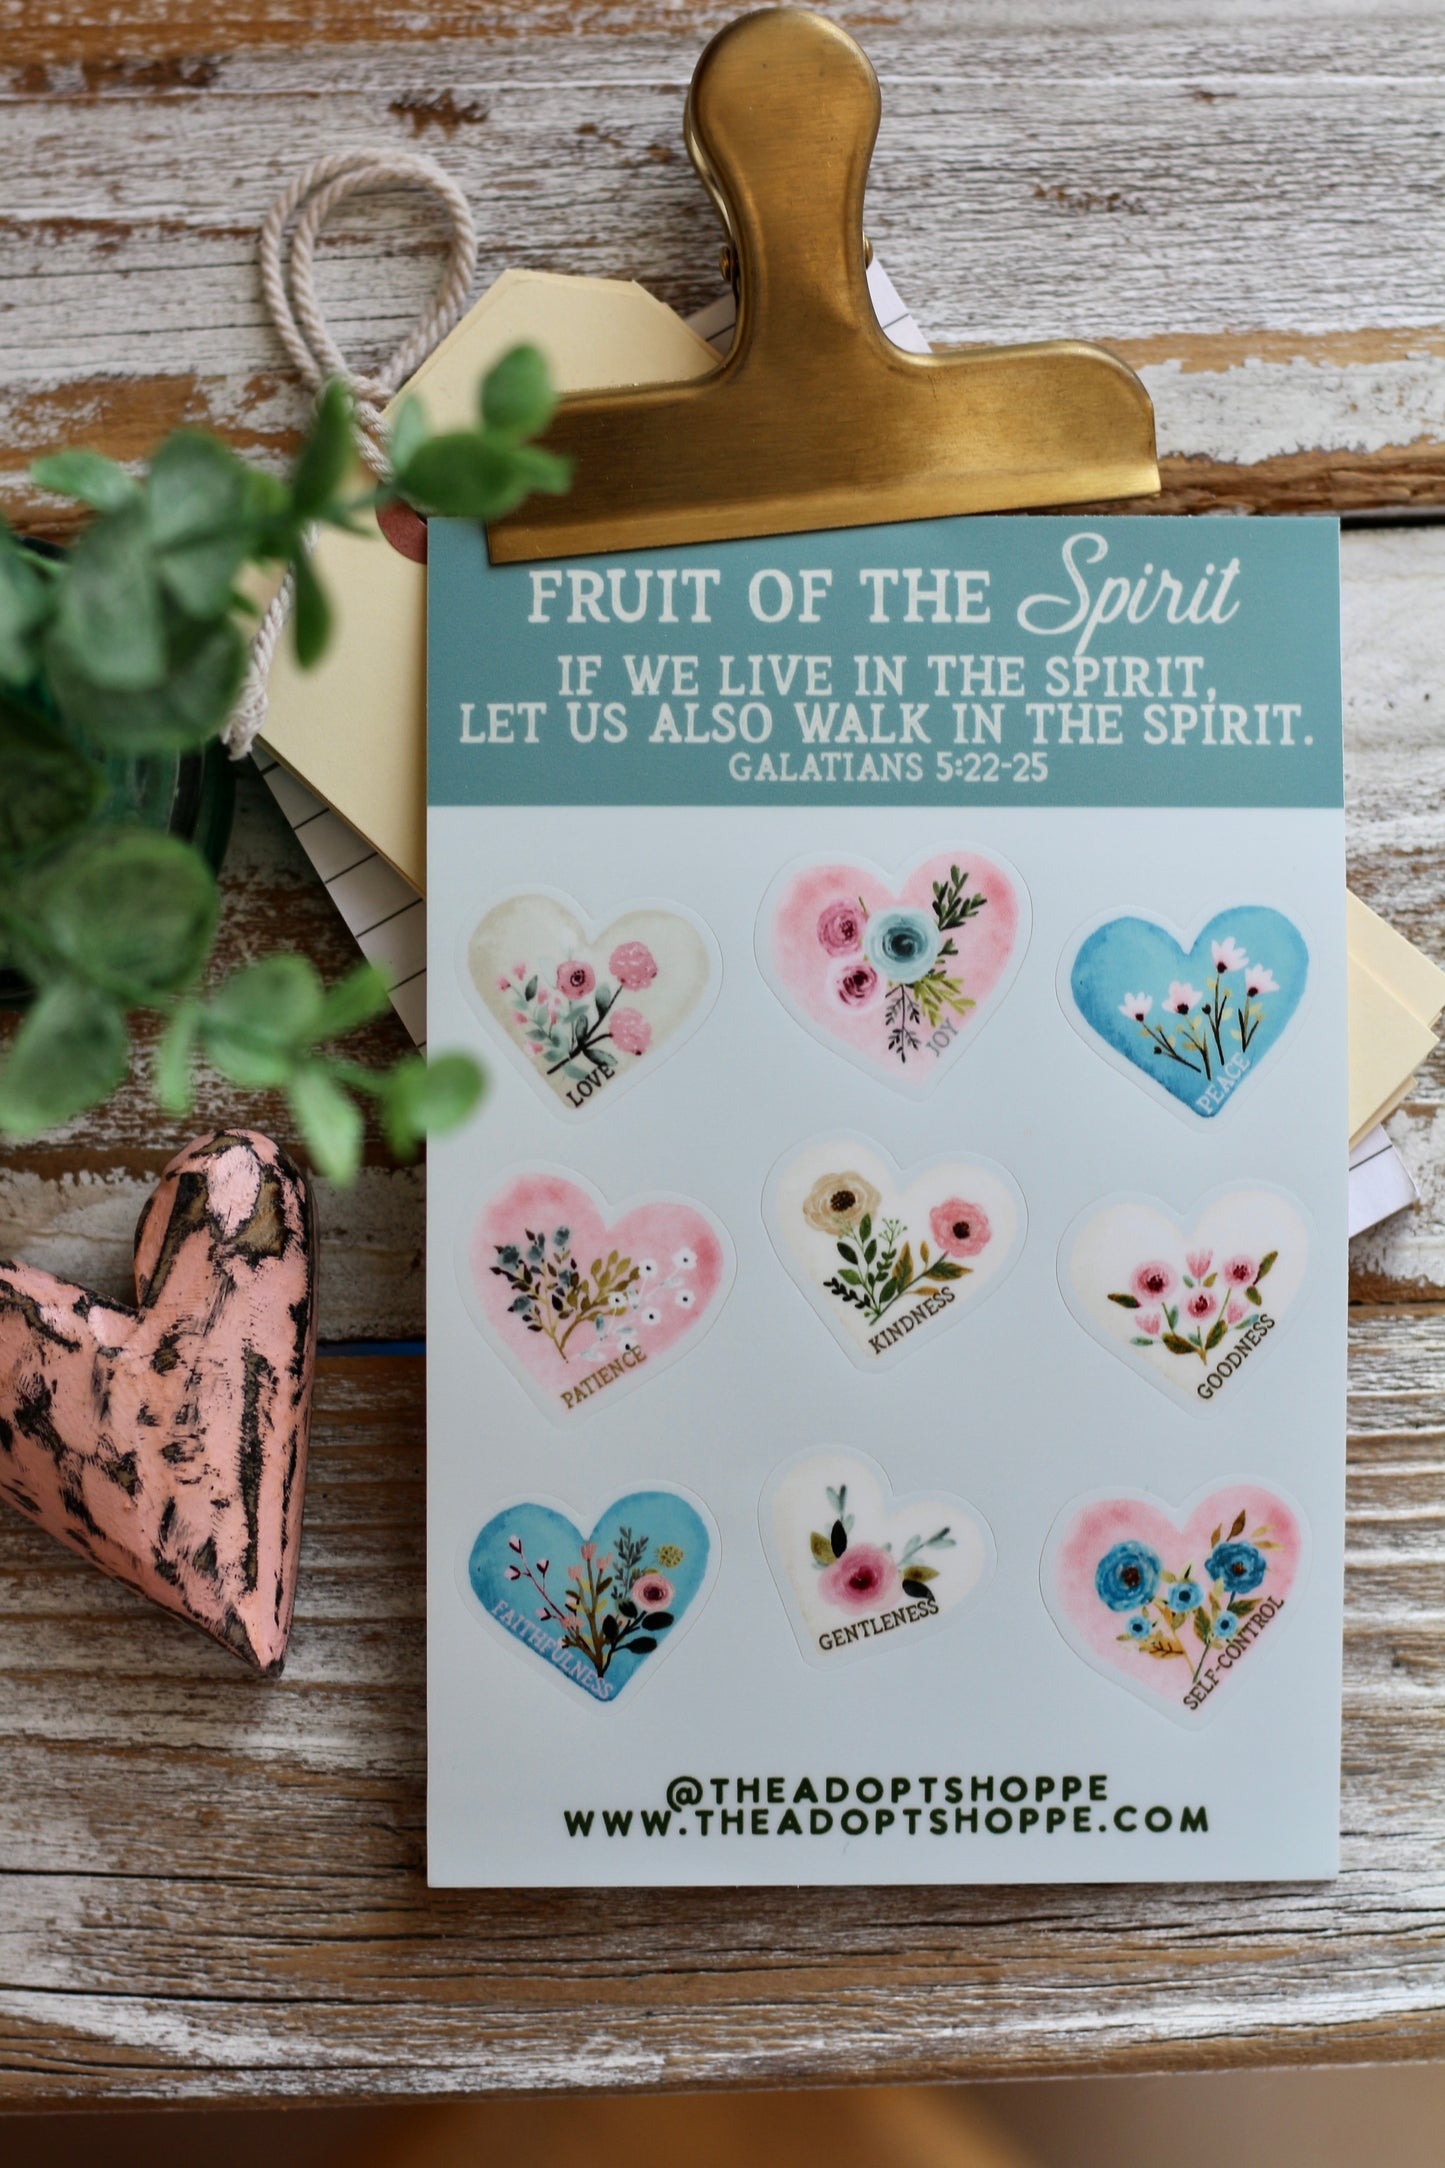 fruit of the Spirit floral heart (Galatians 5:22-25) waterproof vinyl sticker decal sheet